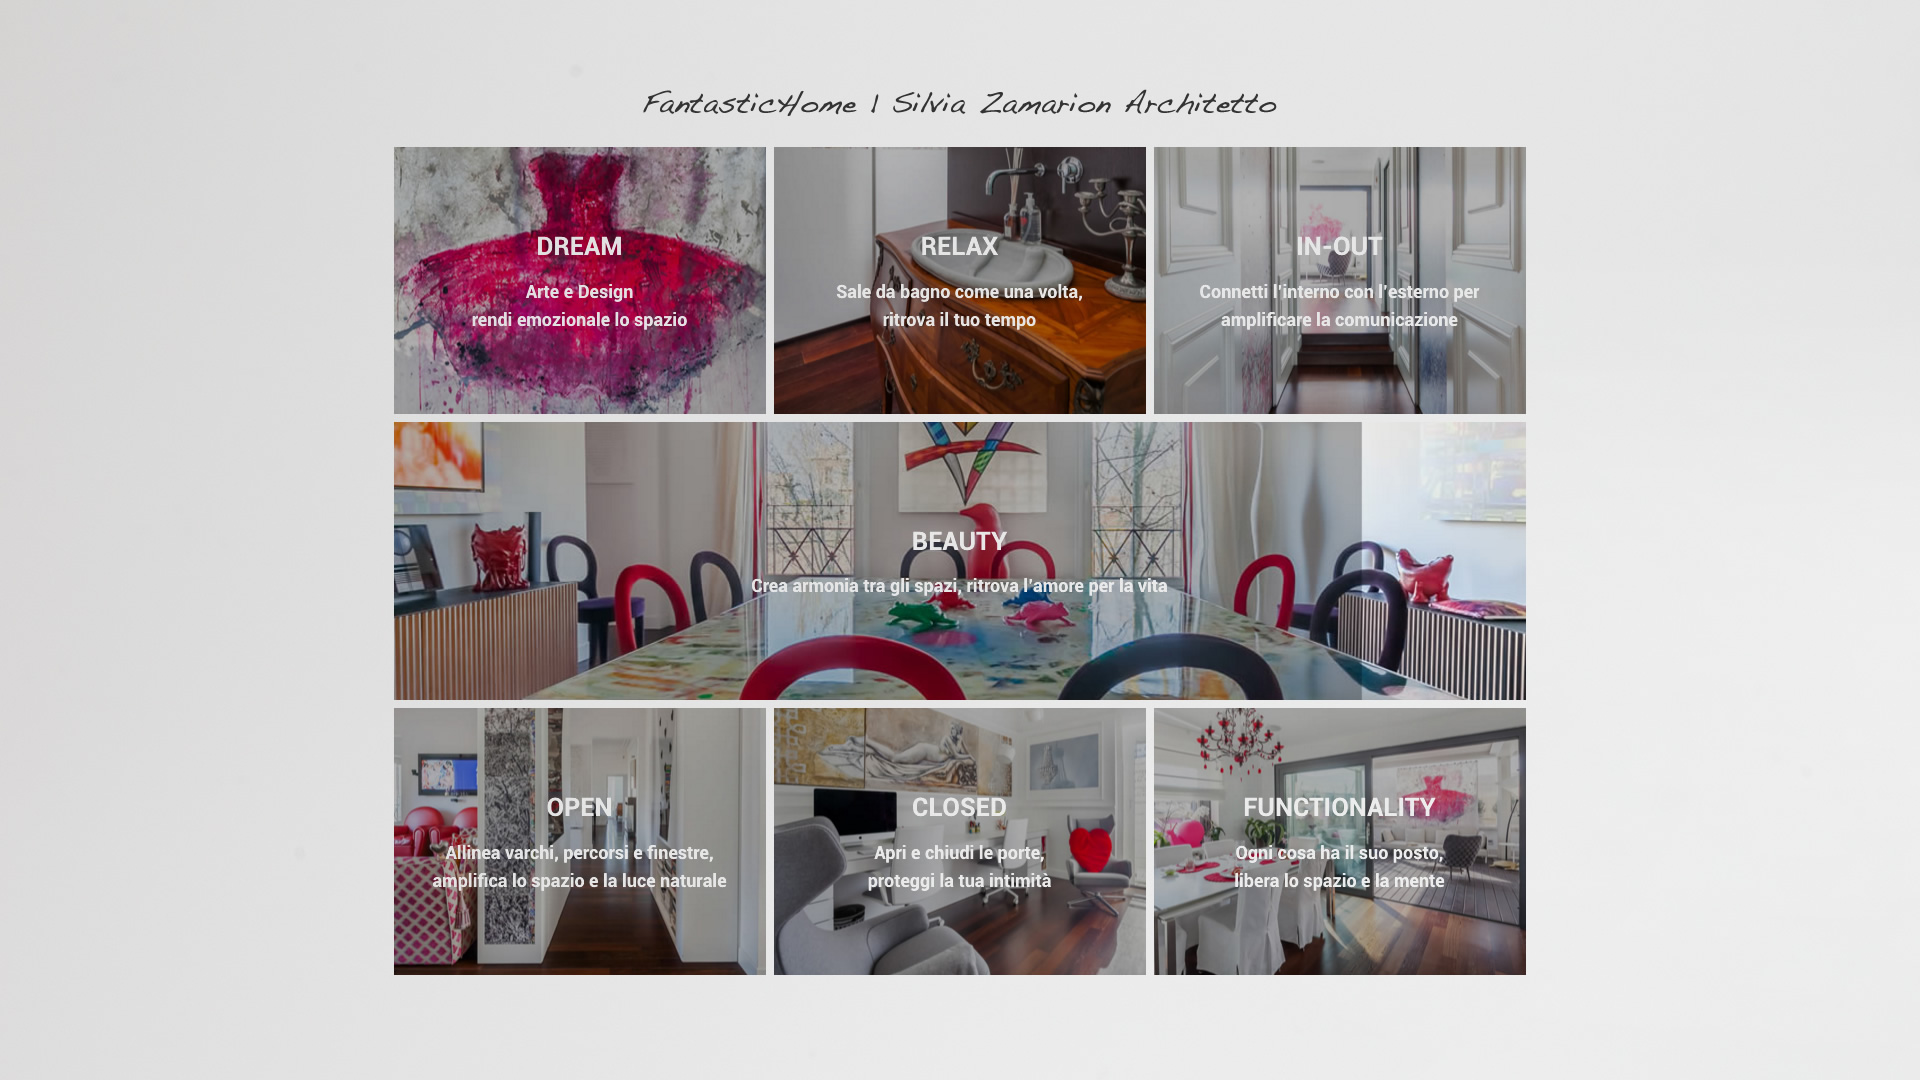 Fantastic Home Silvia Zamarion Architetto - Patrizio Rossi - Portfolio - restyling sito web